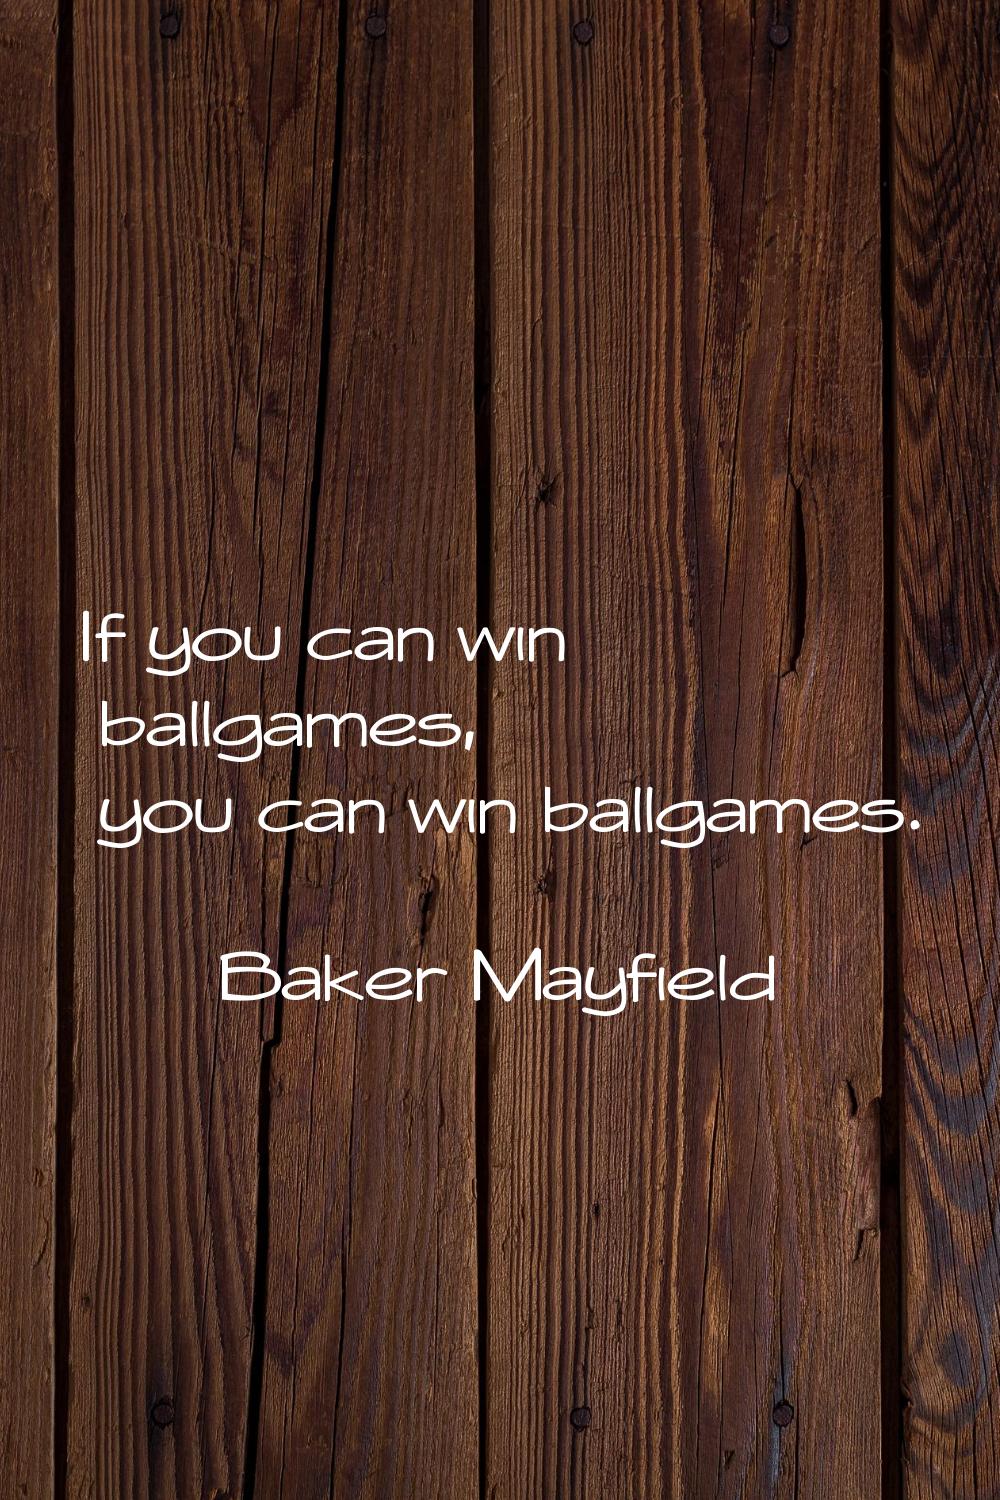 If you can win ballgames, you can win ballgames.